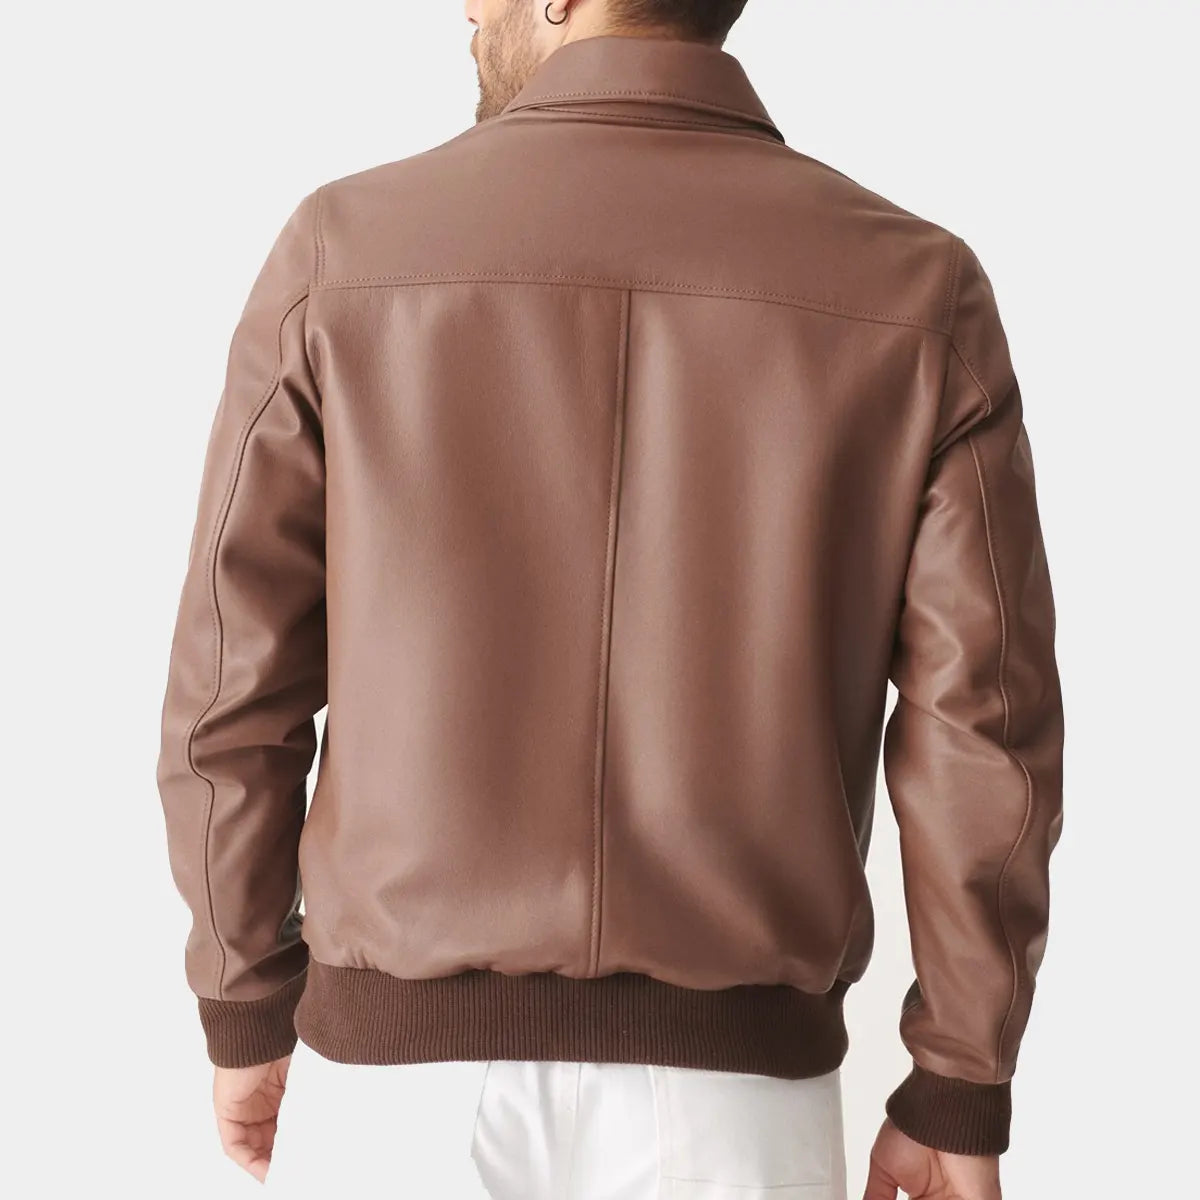 Light Brown Leather jacket men 